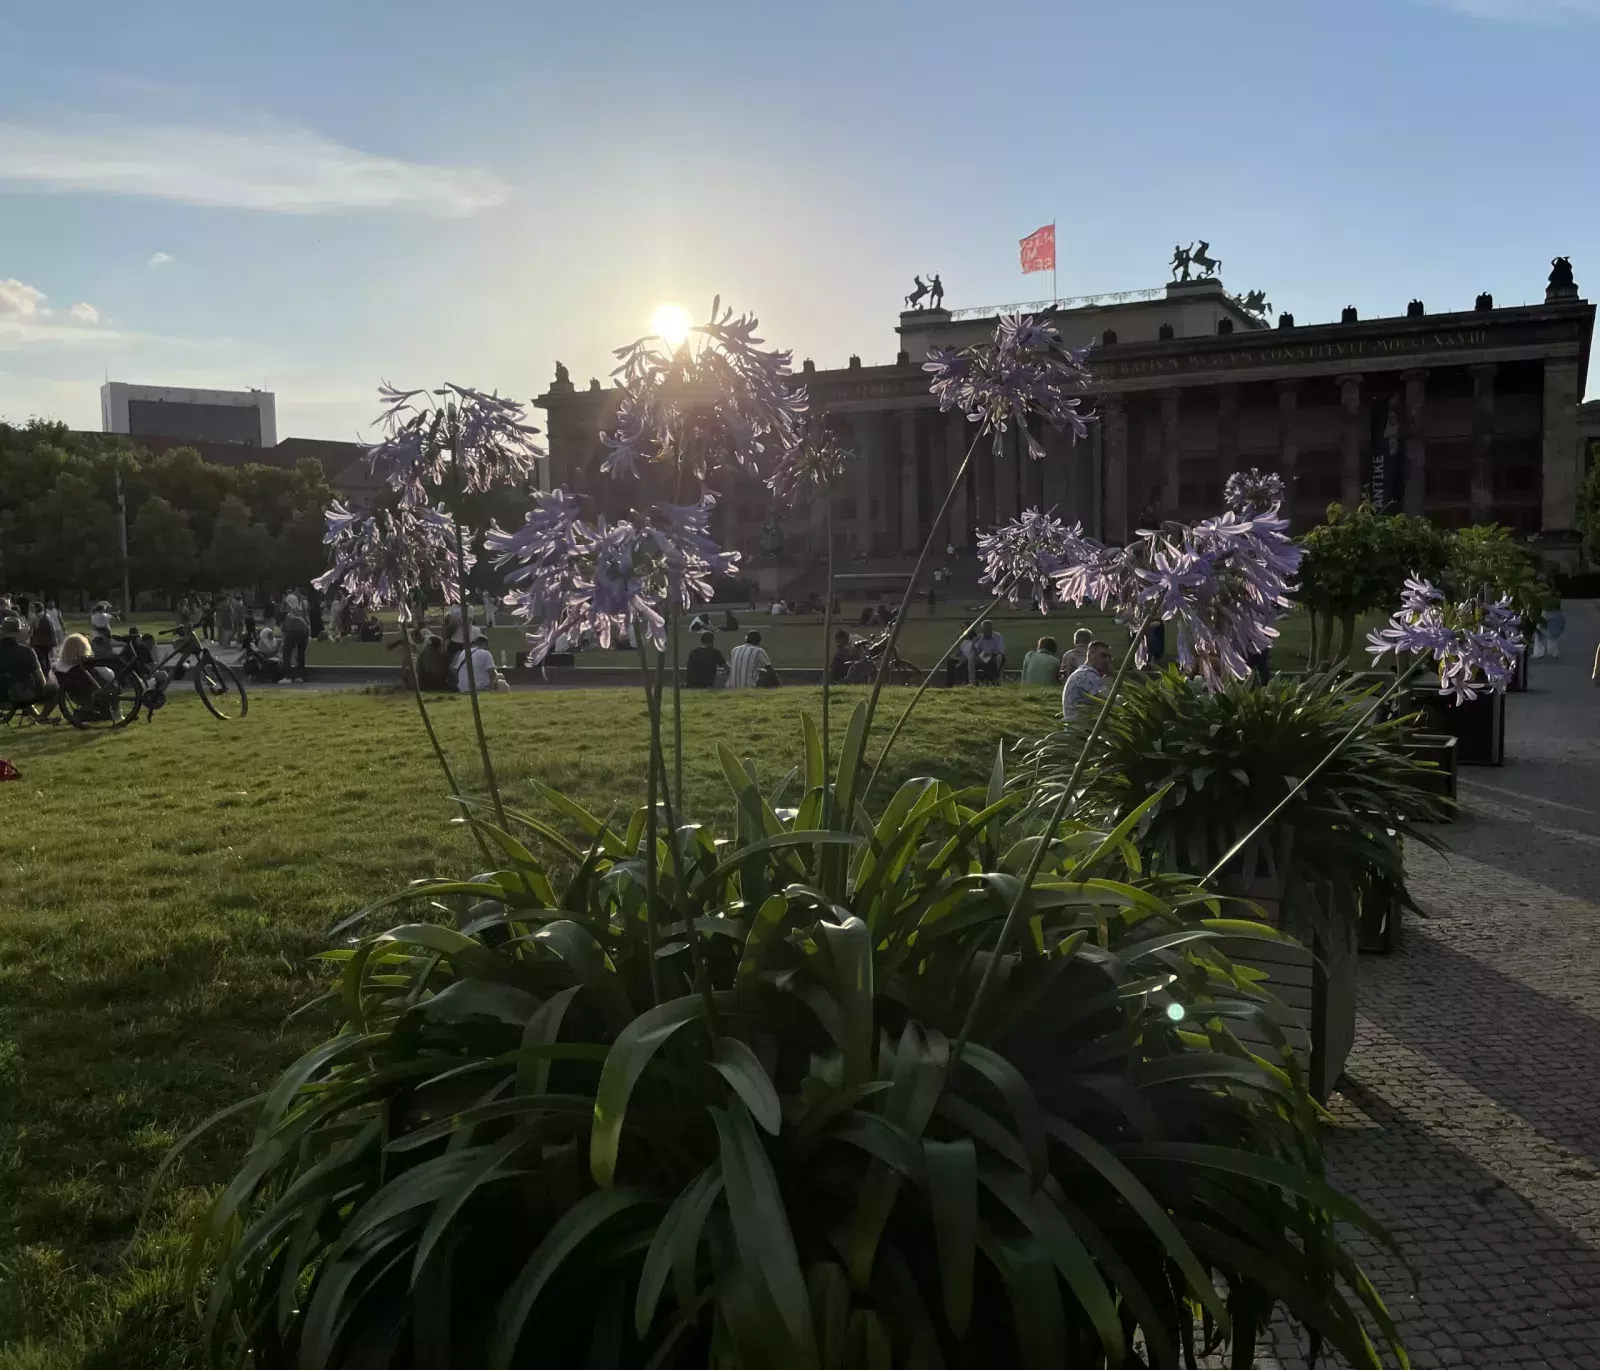 Wiese und hellrosa Blumen im Vordergrund mit Zuhörern bei Musik vorm Alten Museum, Museumsinsel Berlin